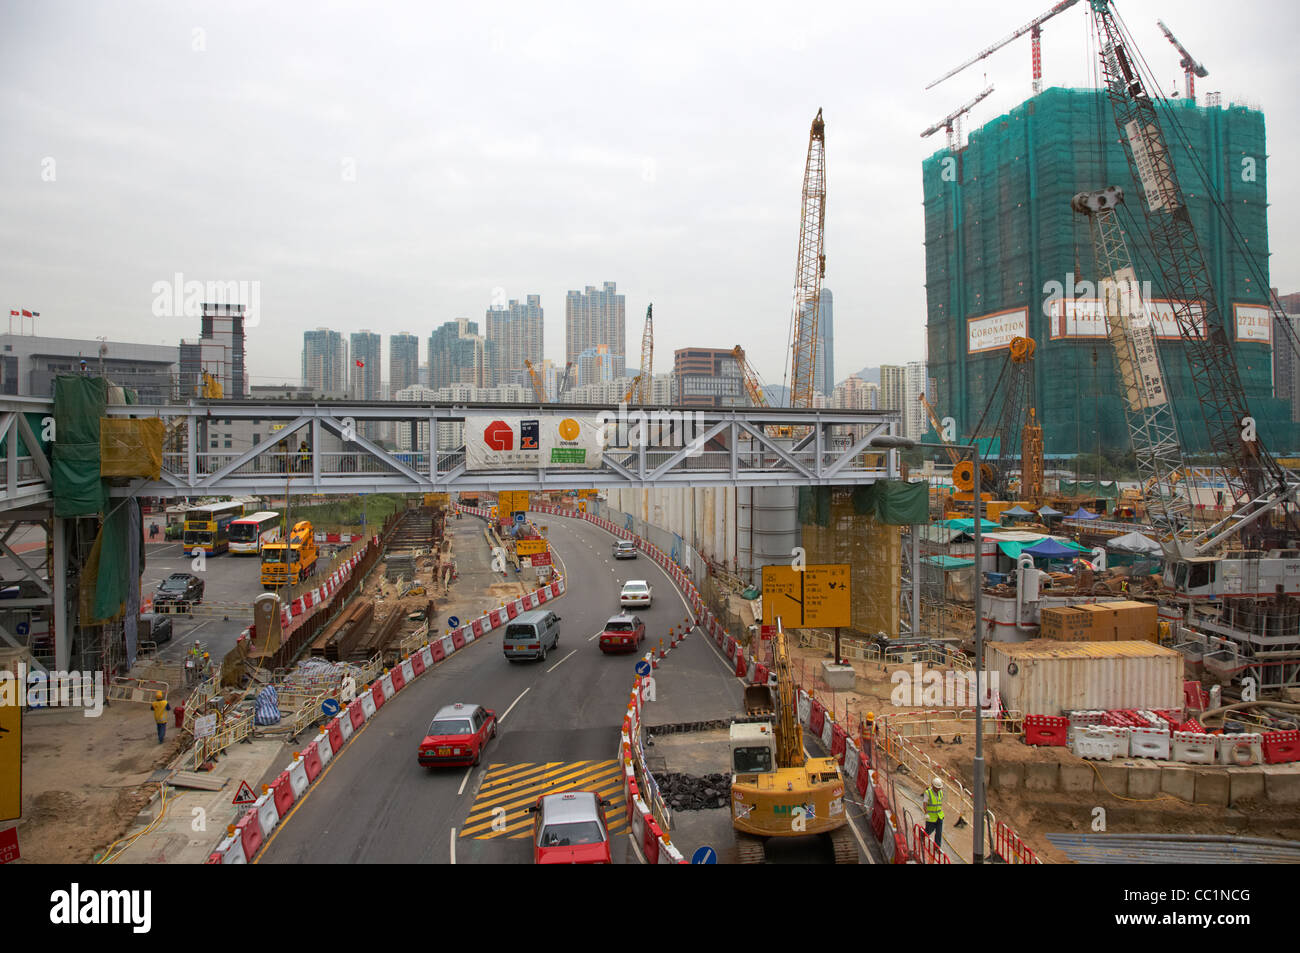 Neubau von Standort und die Krönung Entwicklung im Bau auf Land in West Kowloon Hong Kong Sonderverwaltungsregion Hongkong China Asien zurückgefordert Stockfoto